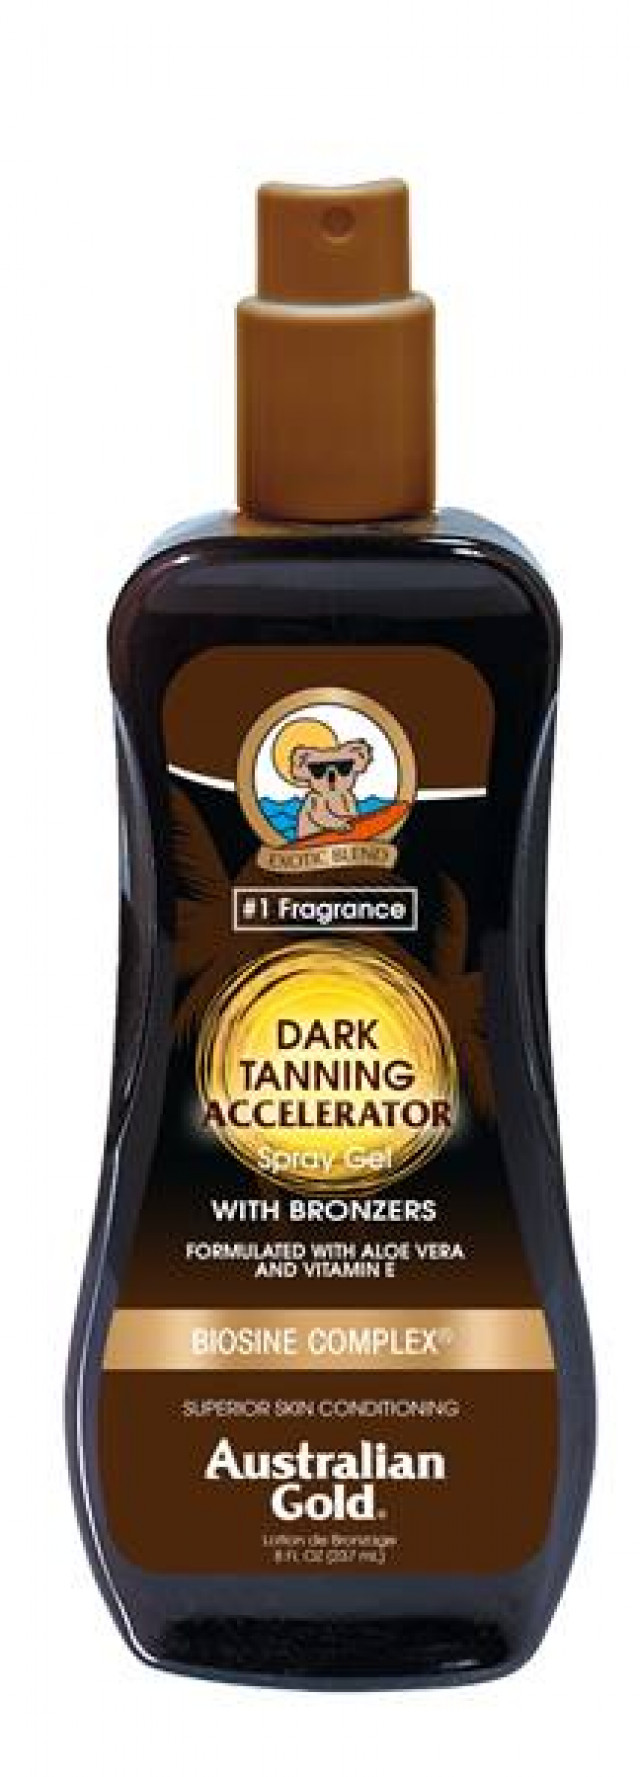 Dark tannig accelerator